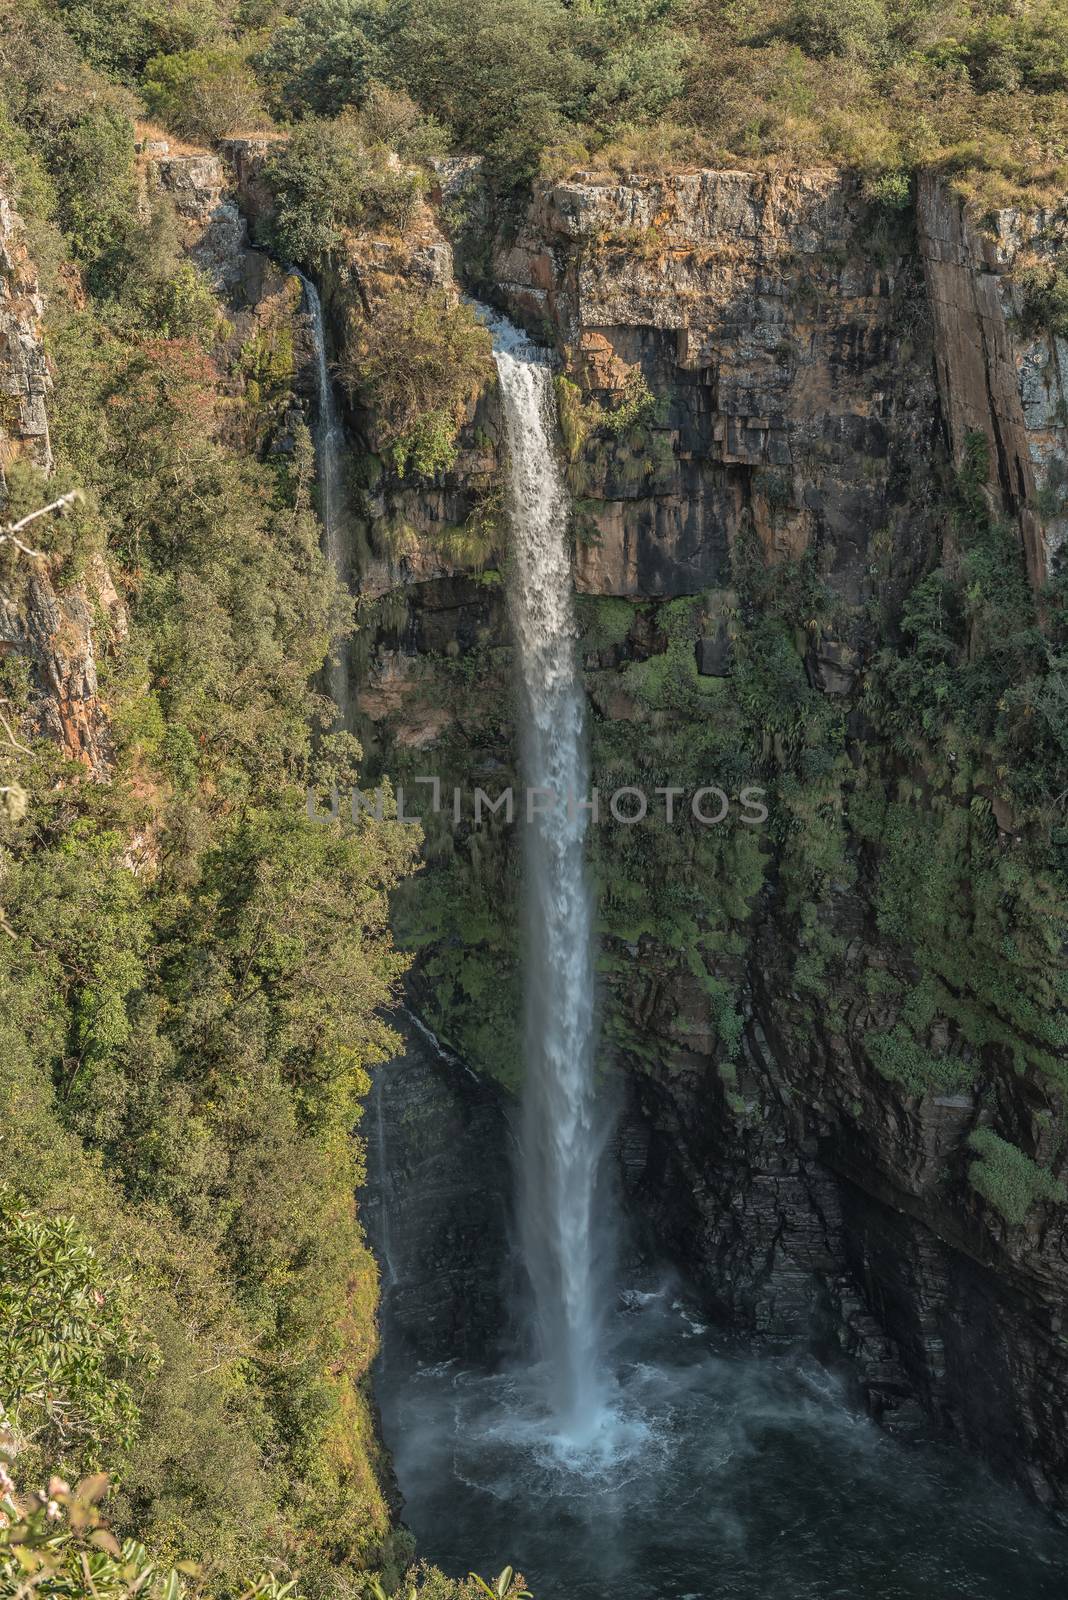 Mac Mac Falls near Sabie in Mpumalanga by dpreezg